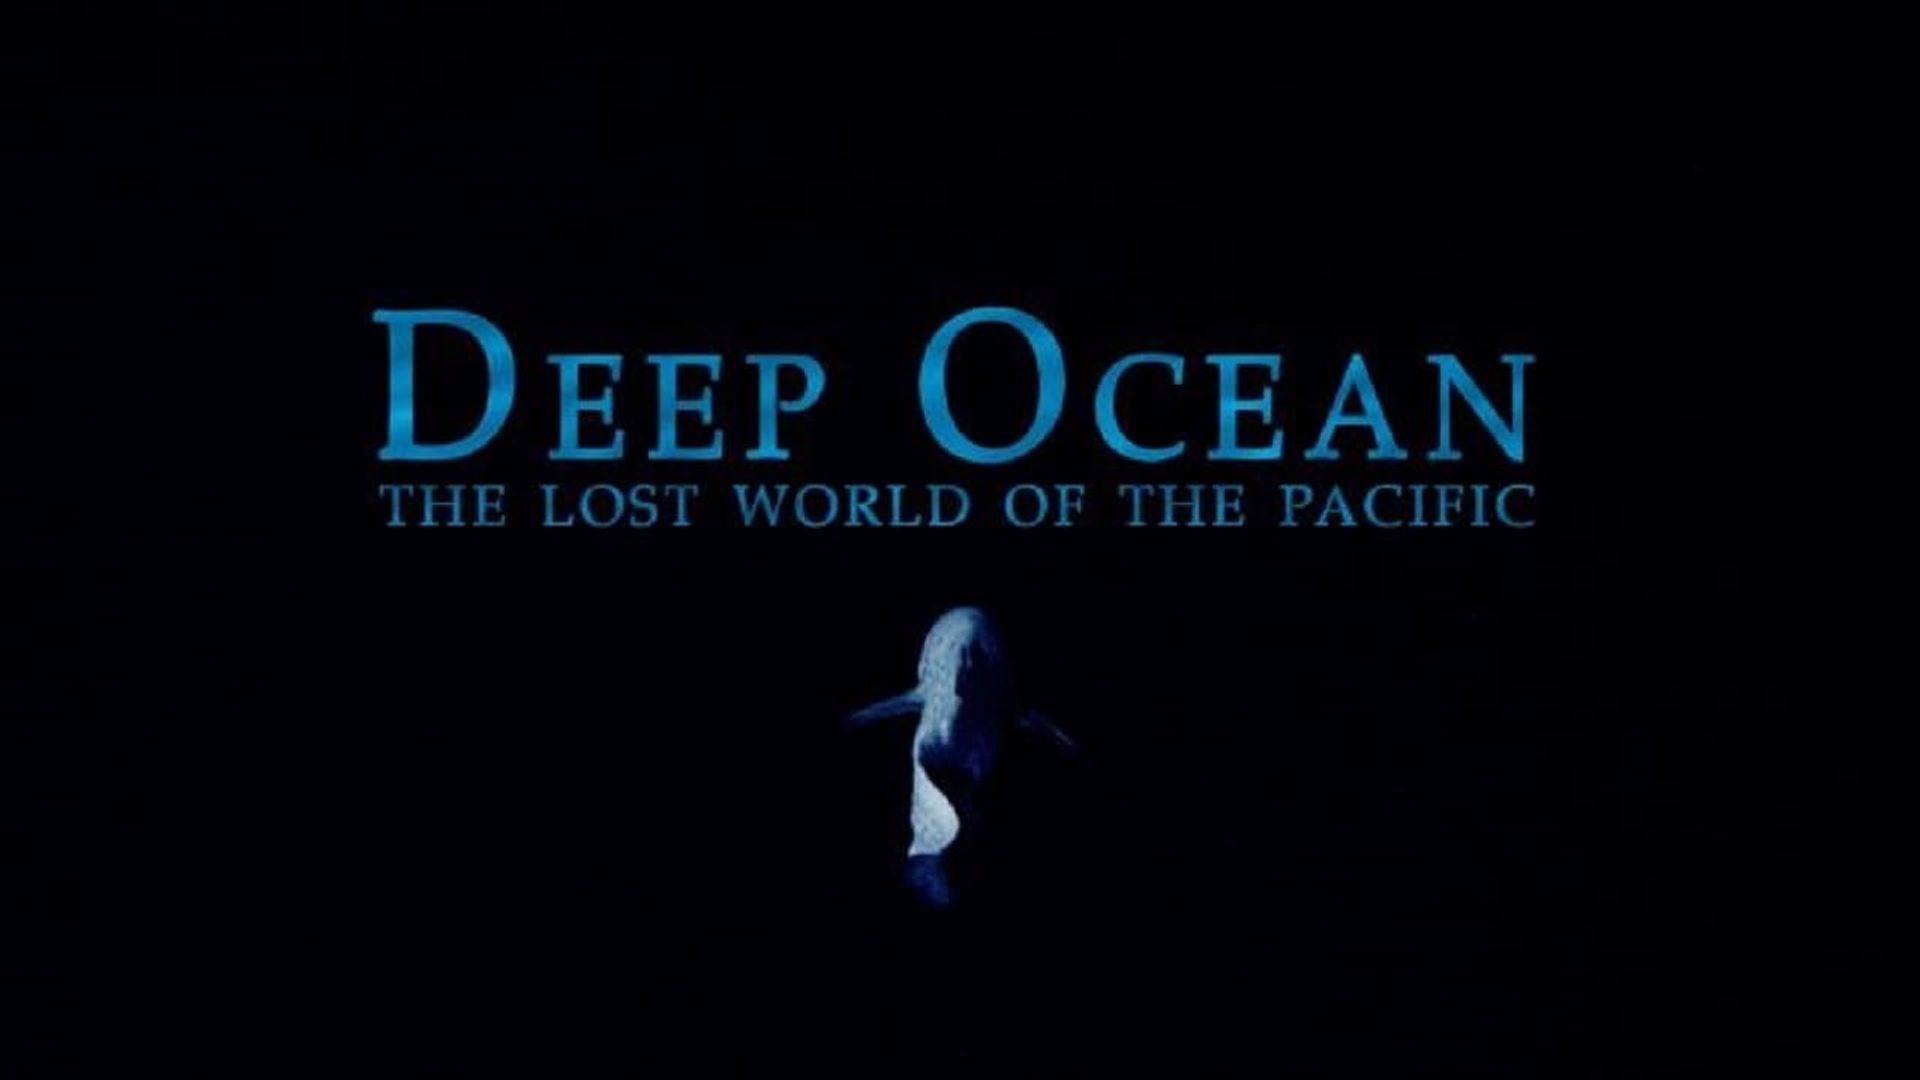 Deep Ocean background